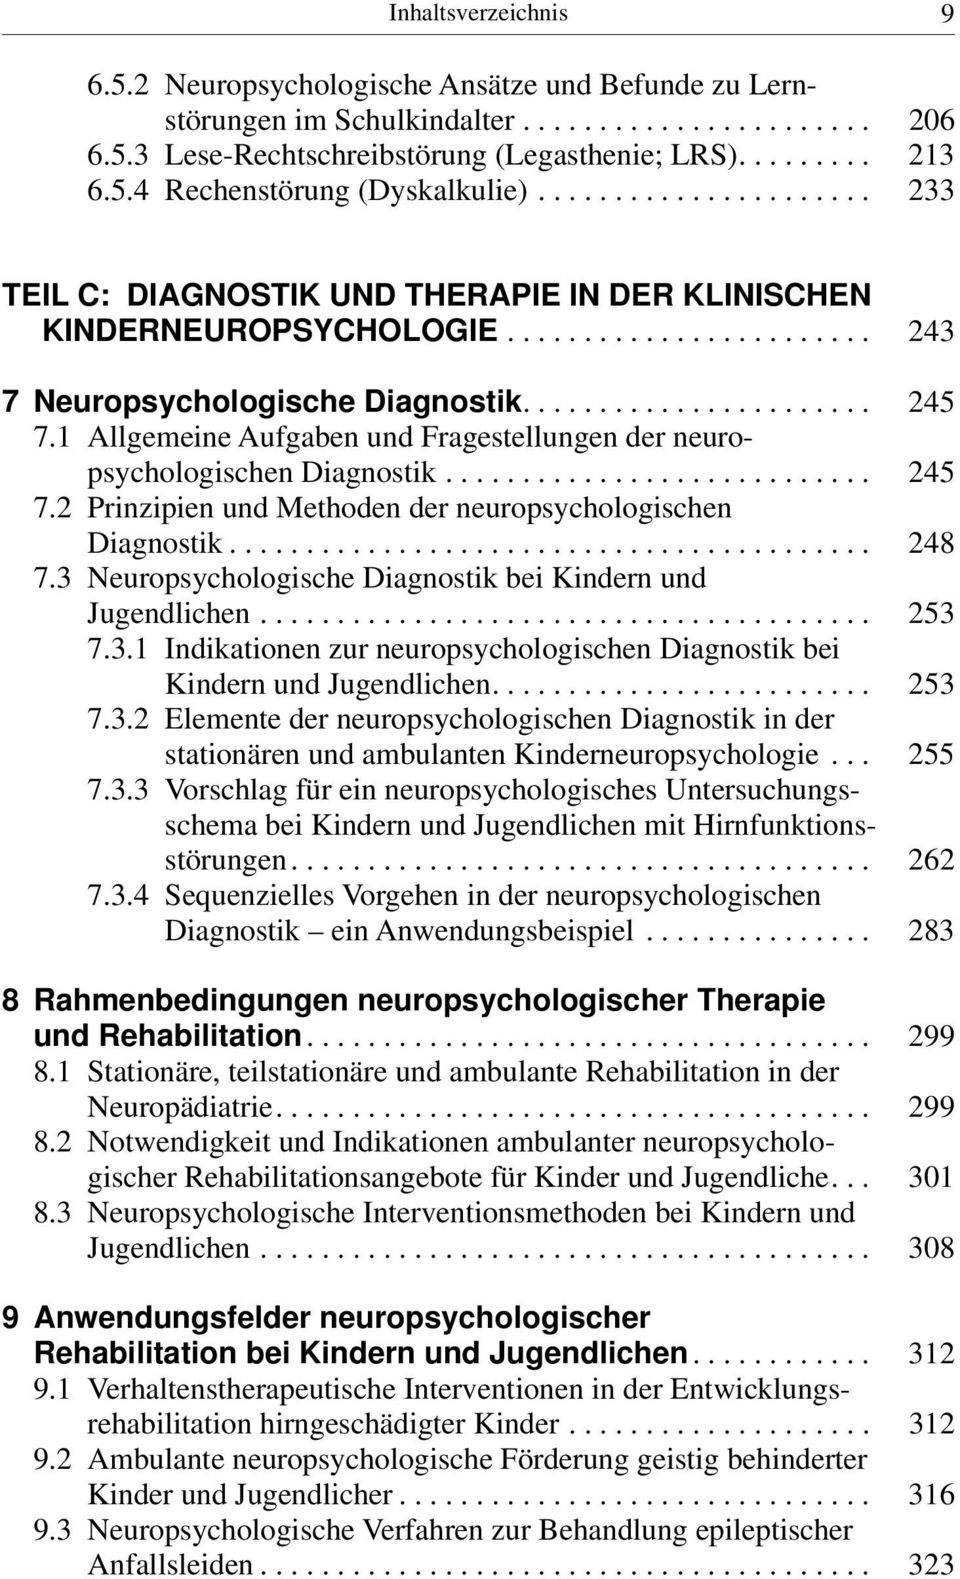 1 Allgemeine Aufgaben und Fragestellungen der neuropsychologischen Diagnostik............................ 245 7.2 Prinzipien und Methoden der neuropsychologischen Diagnostik.......................................... 248 7.